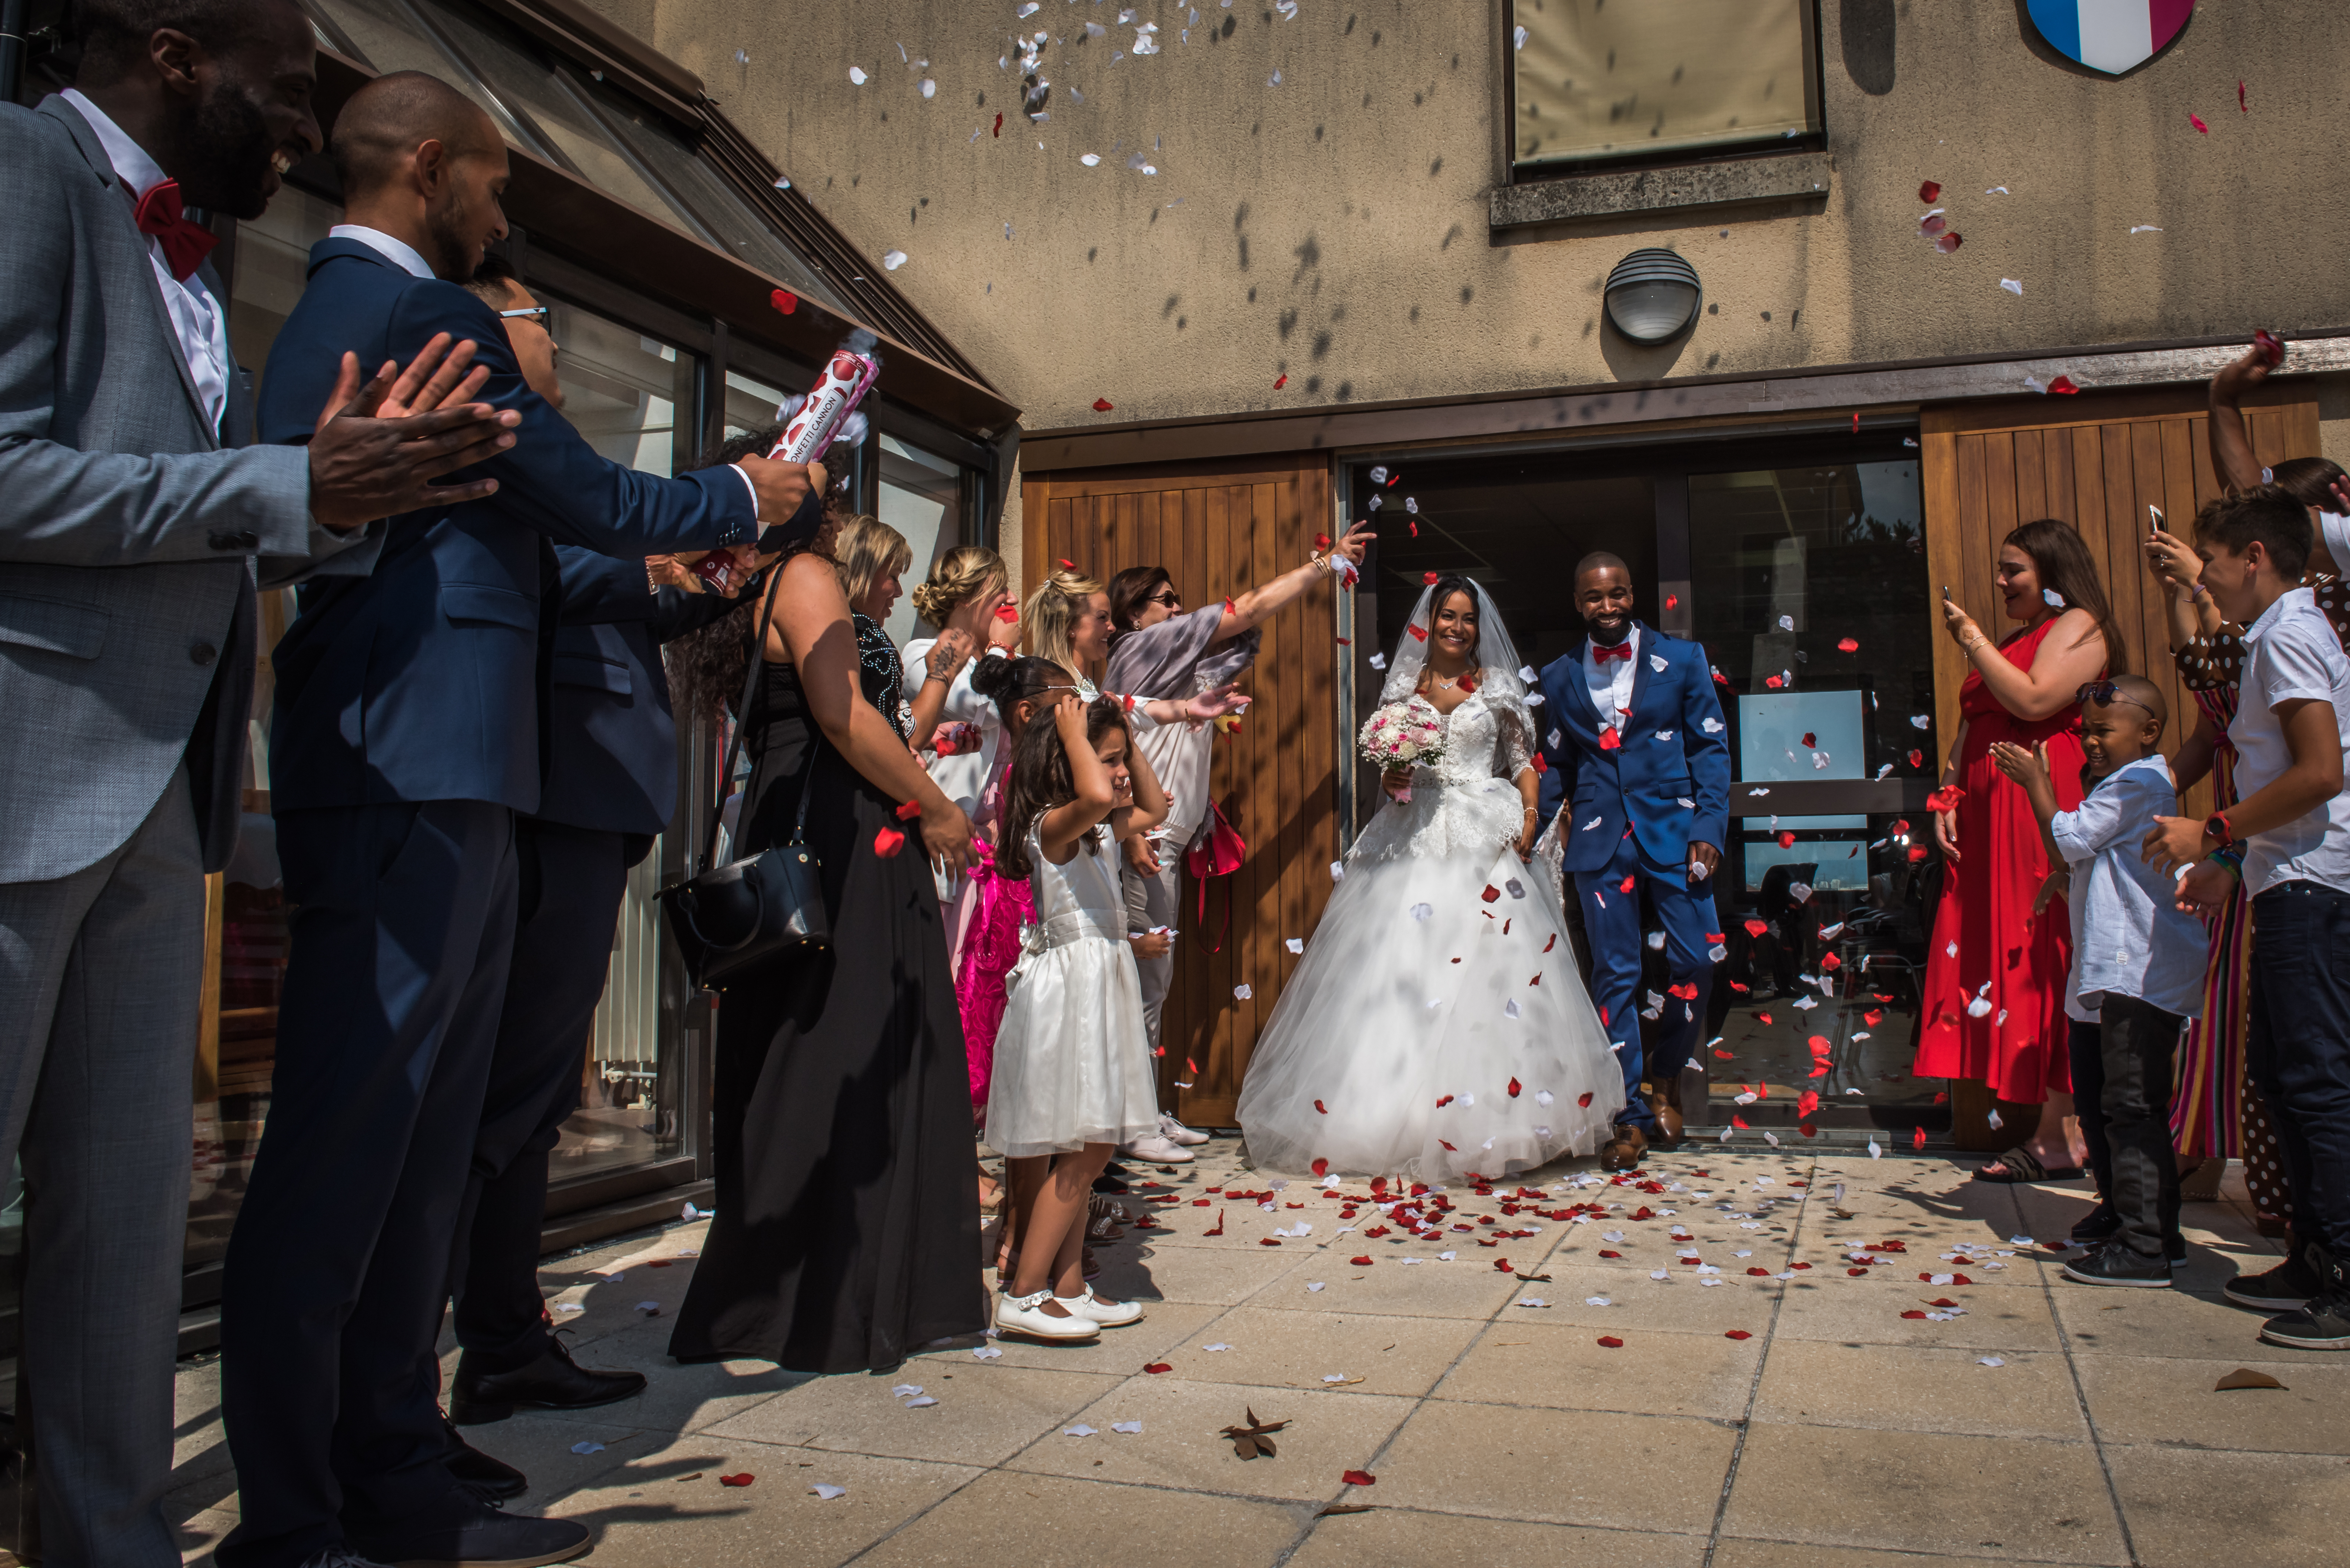 Mariage de Zara et Christy cérémonie sortie de la mairie, les mariés sont couvert de pétales de roses blanches et rouges